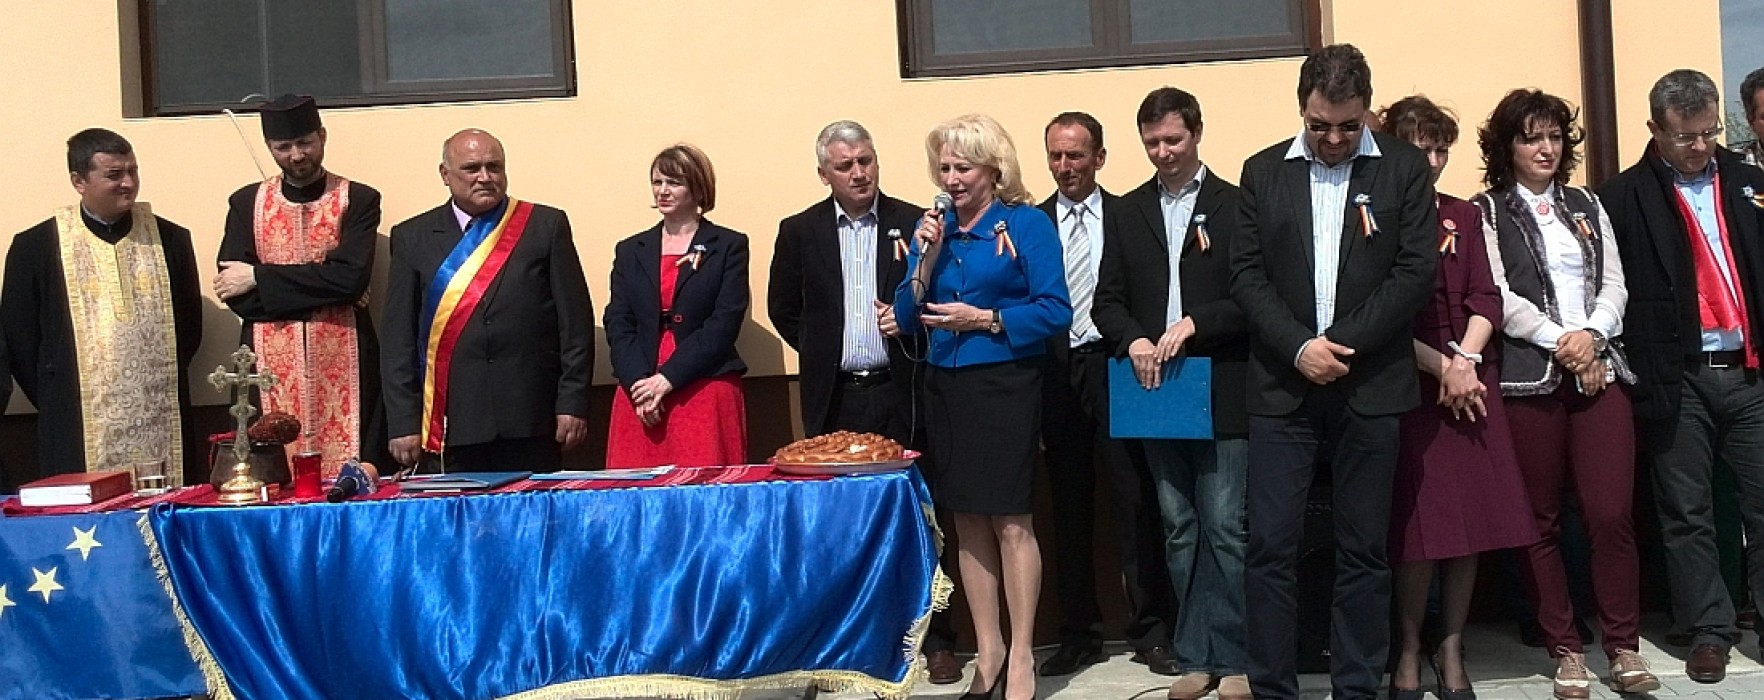 Viorica Dăncilă (PSD), candidat la europarlamentare, a participat la inaugurarea unui after school, la Raciu